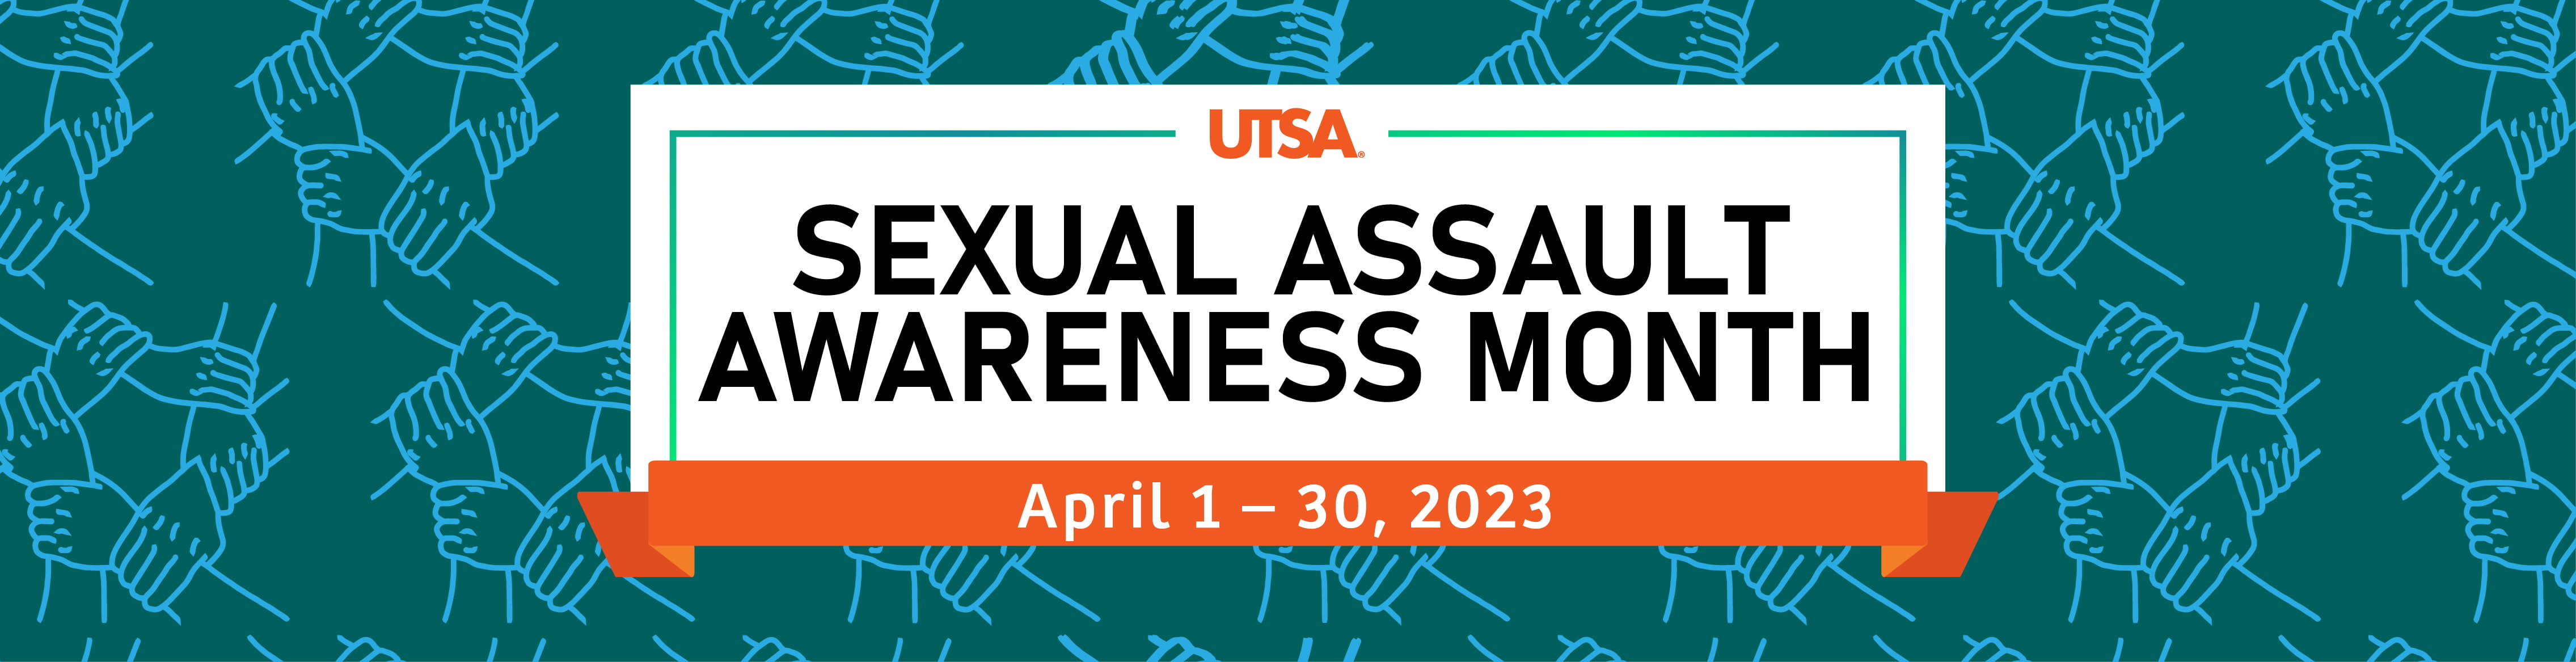 Sexual Assault Awareness Month 2023